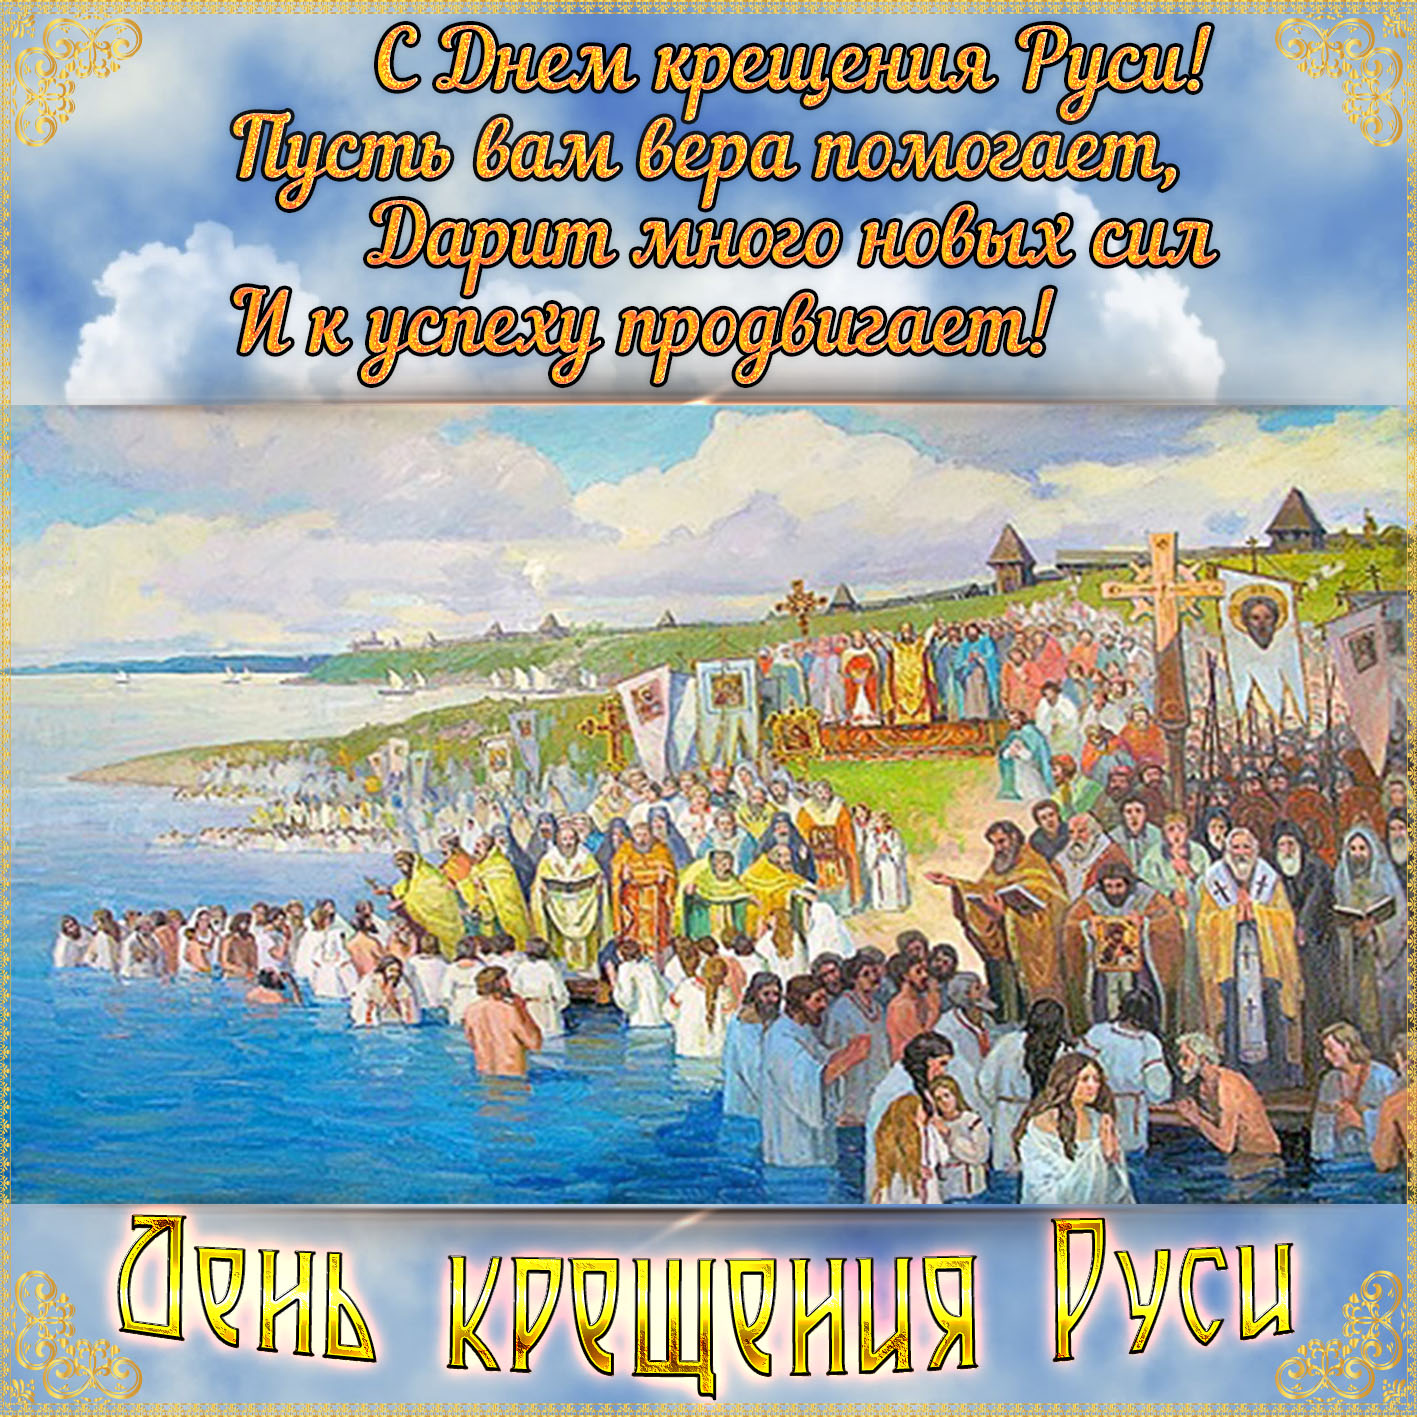 Открытка на День крещения Руси с пожеланием.